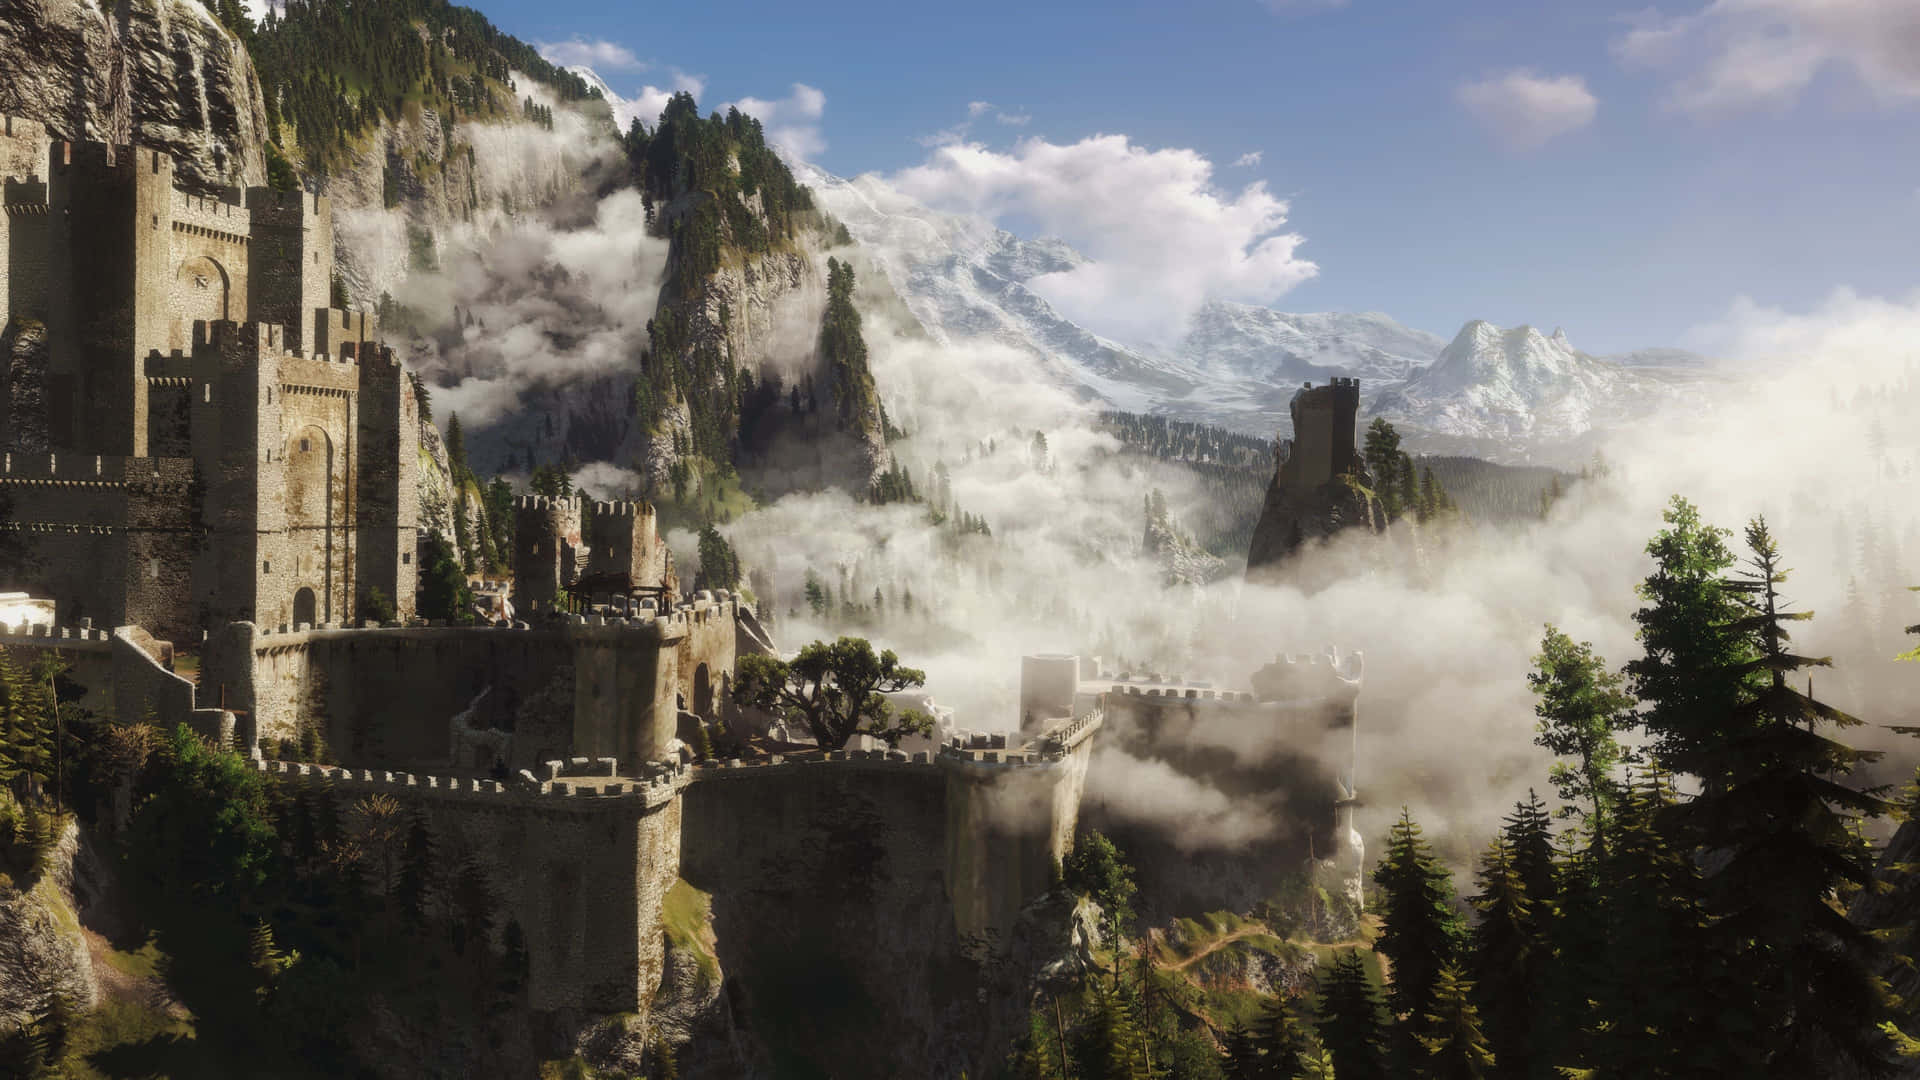 Geraltdi Rivia: Il Lupo Bianco In Azione